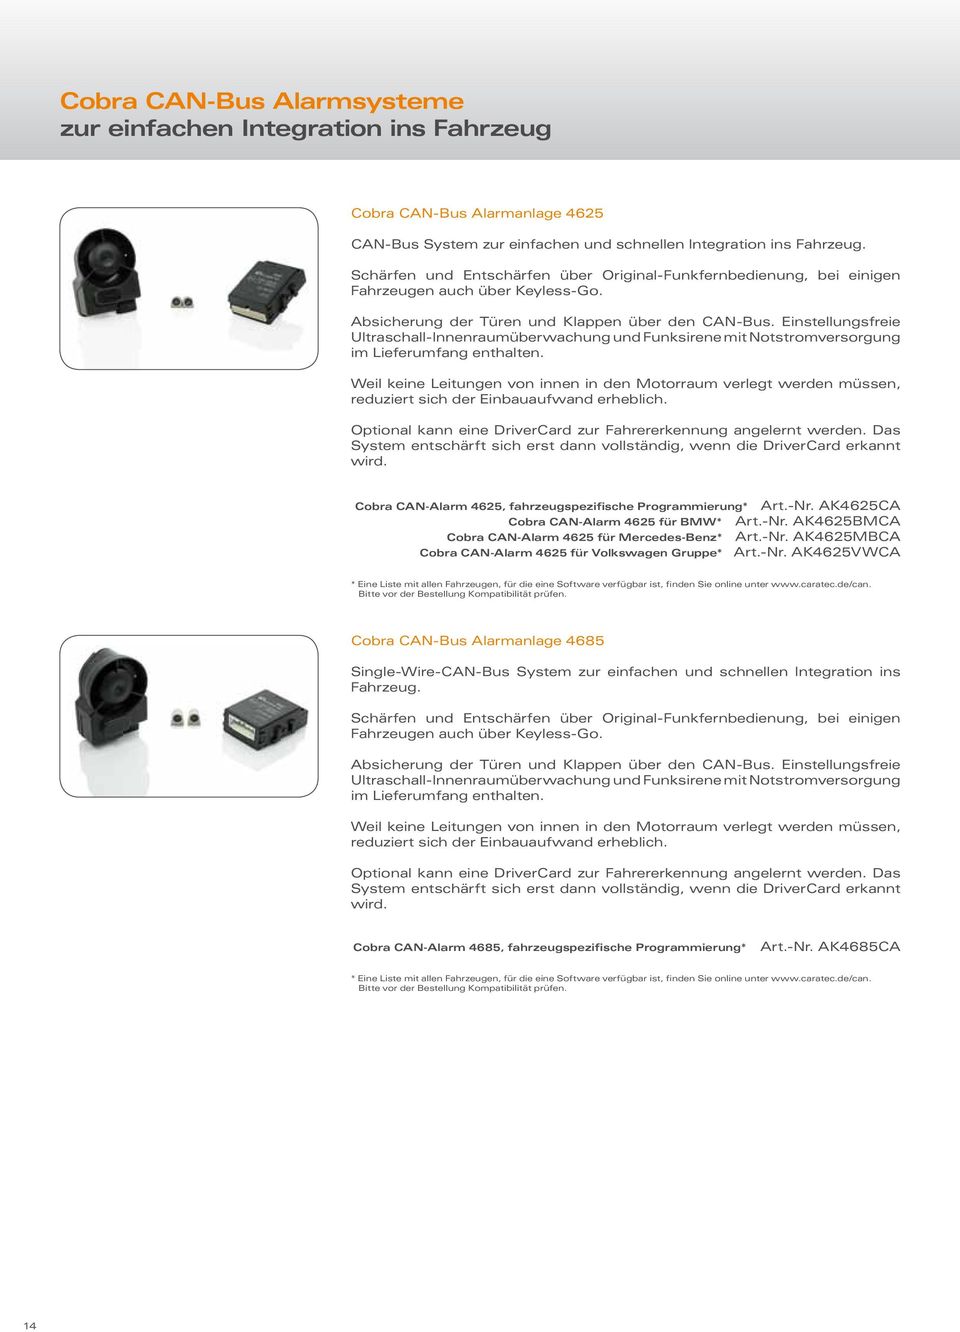 Einstellungsfreie Ultraschall-Innenraumüberwachung und Funksirene mit Notstromversorgung im Lieferumfang enthalten.